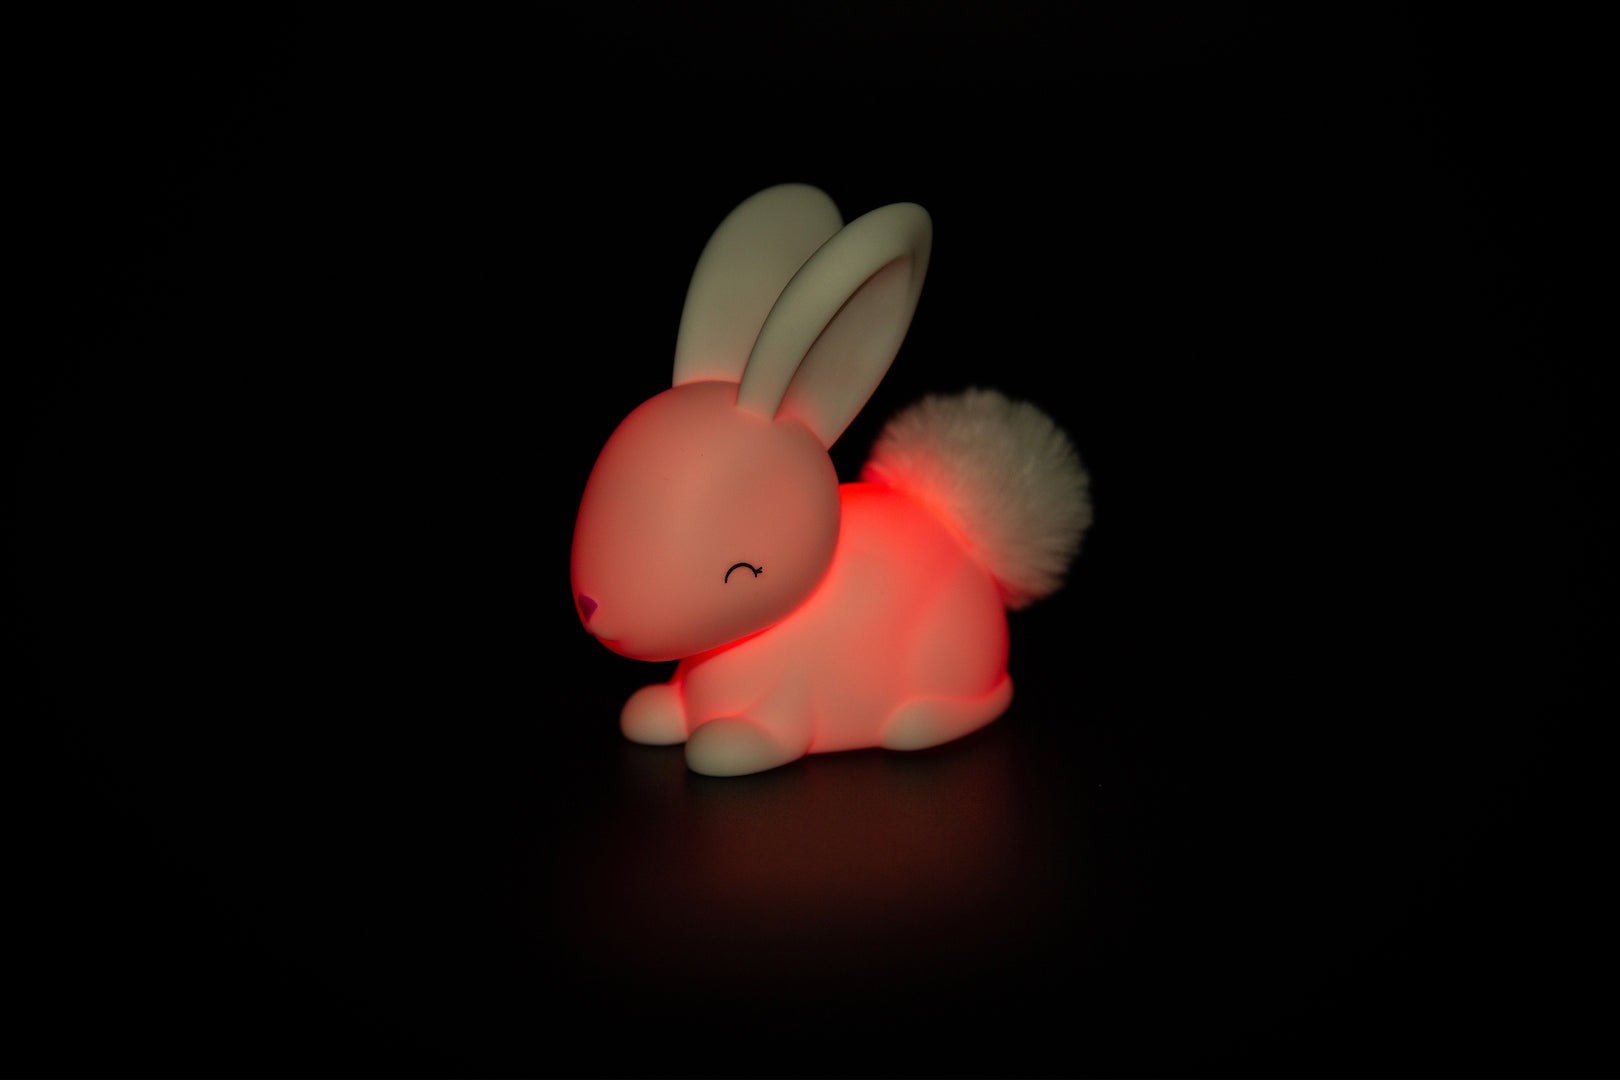 Dhink Baby Tavşan Gece Lambası